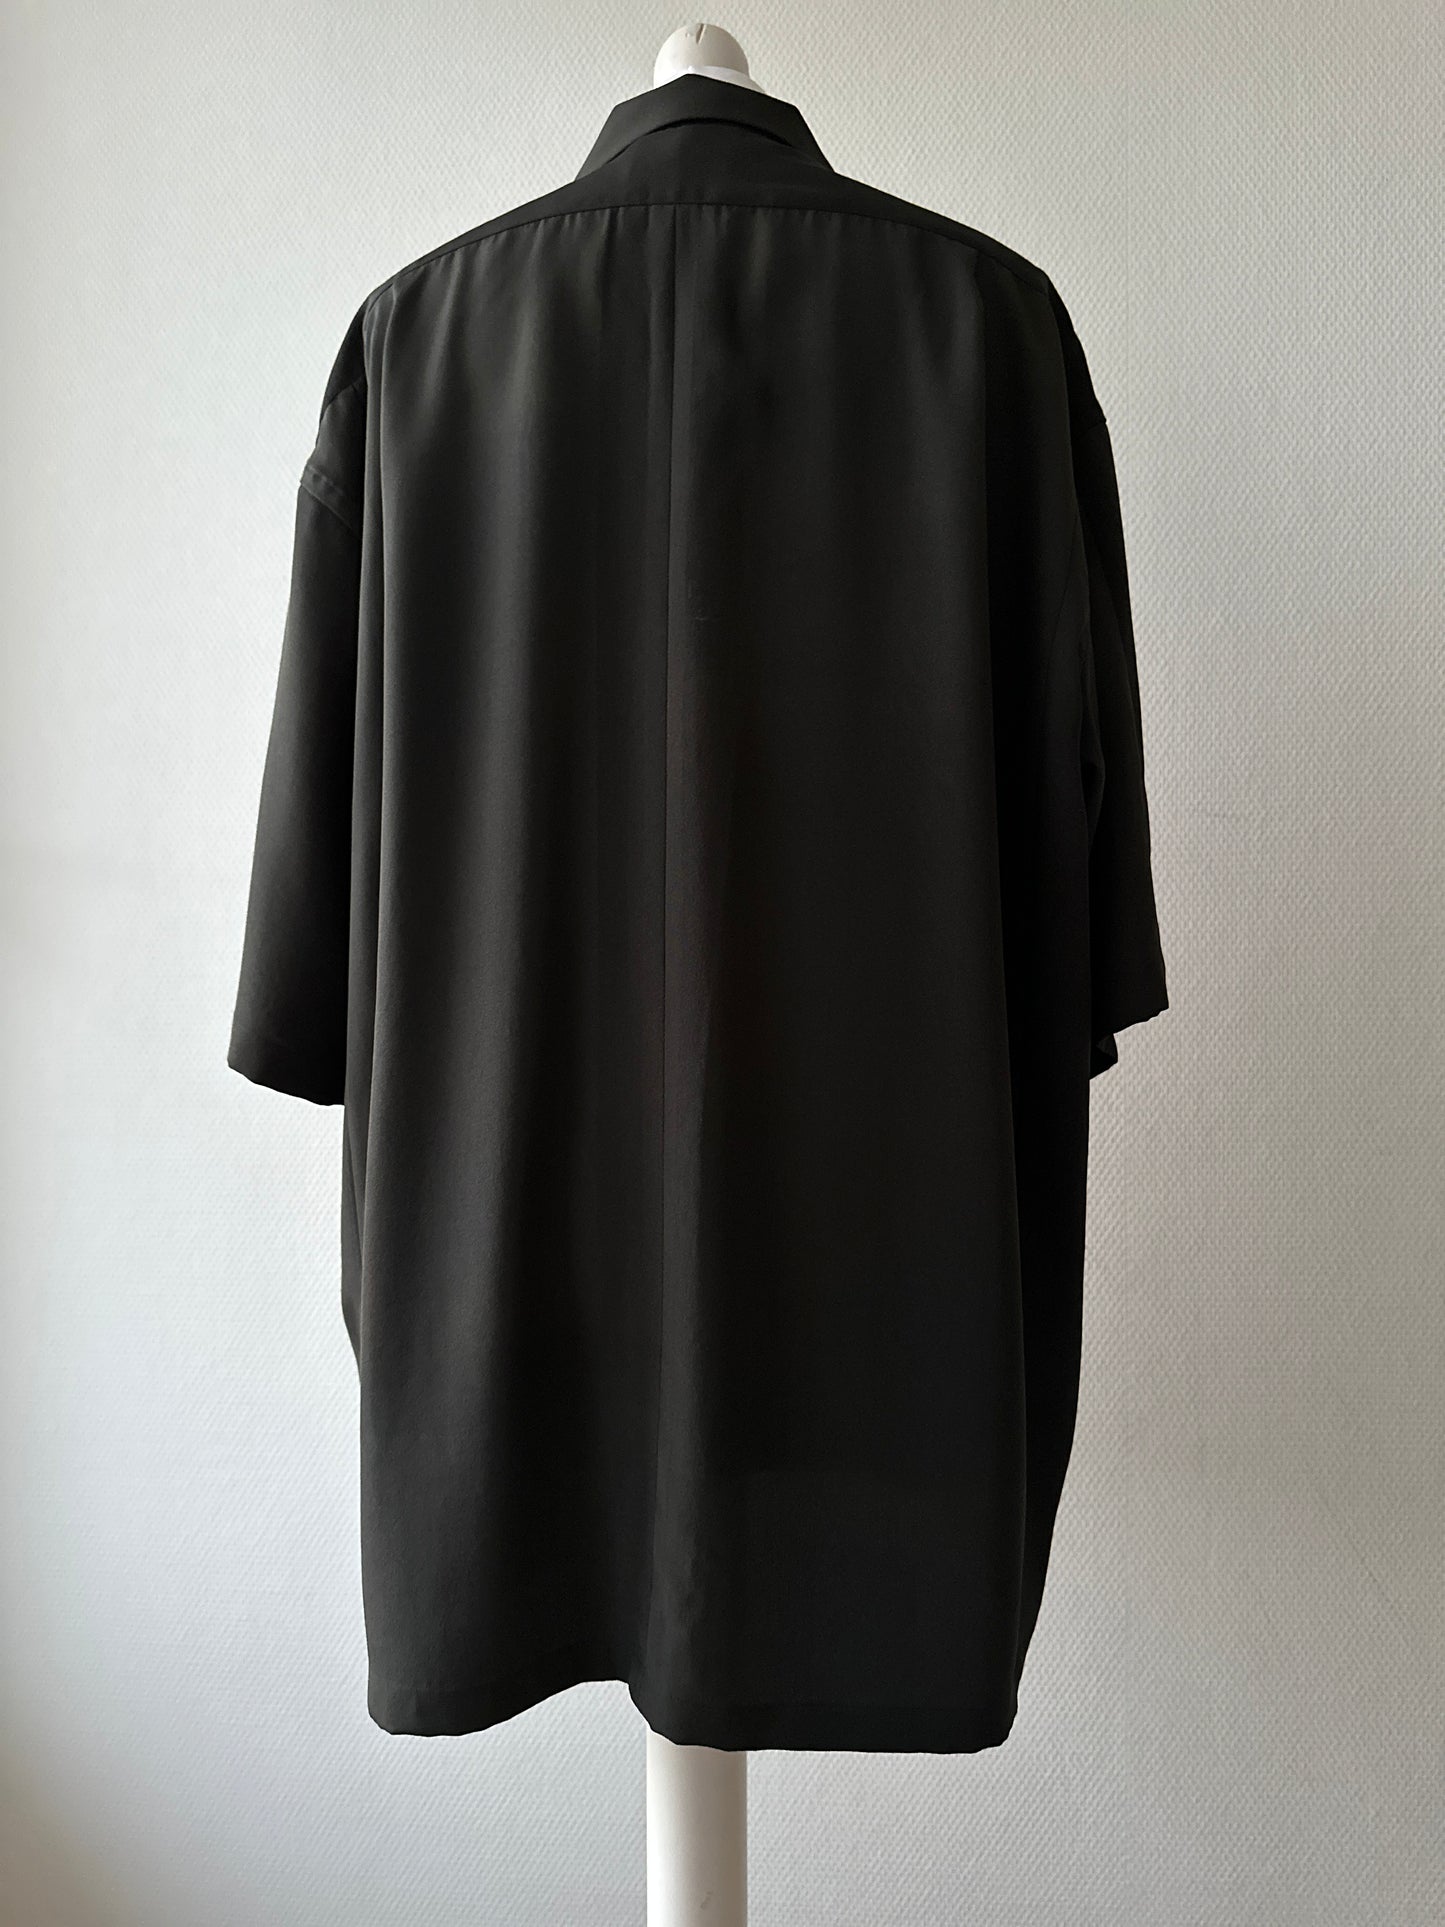 【Zwart en goud, kissho】 Hawaiiaans shirt/maat: 3l ＜ Nieuw ・ zijde ＞ voor mannen, voor vrouwen, Japanse kimono, Japan unisexese kleding, unisex, Japanse geschenken, origineel item